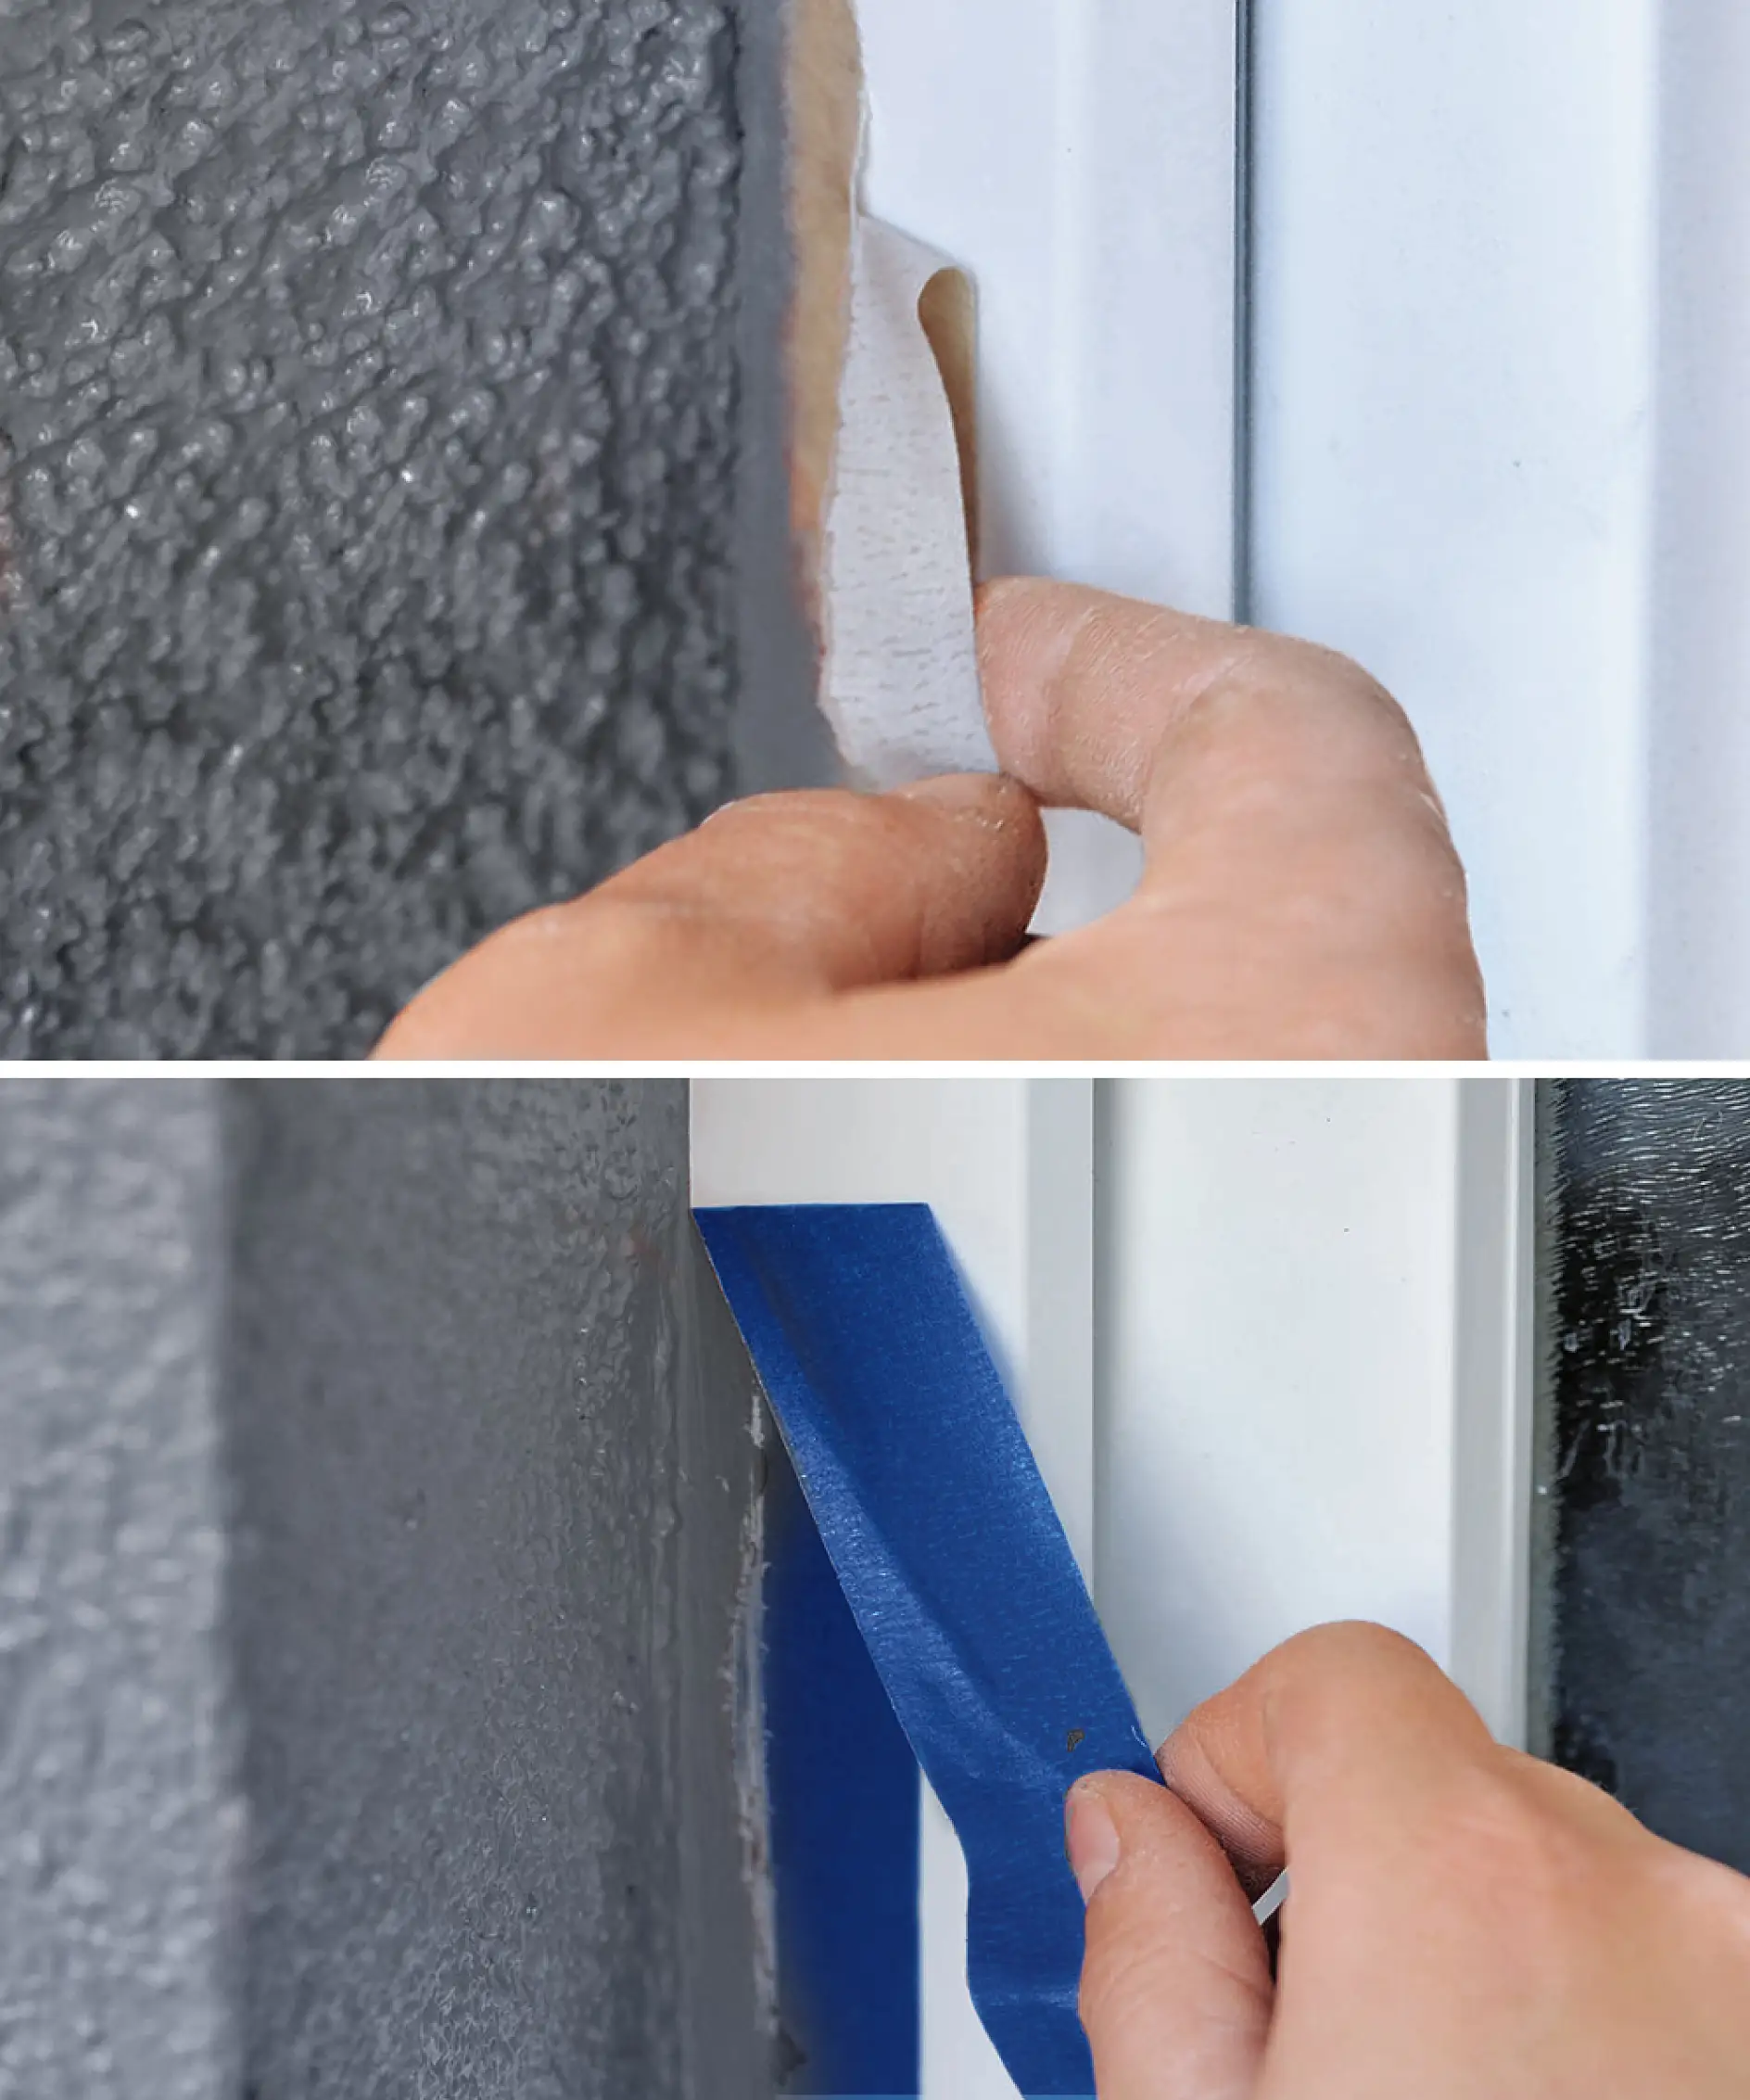 La mascheratura delle finestre in PVC può essere insidiosa se si usa il nastro sbagliato.